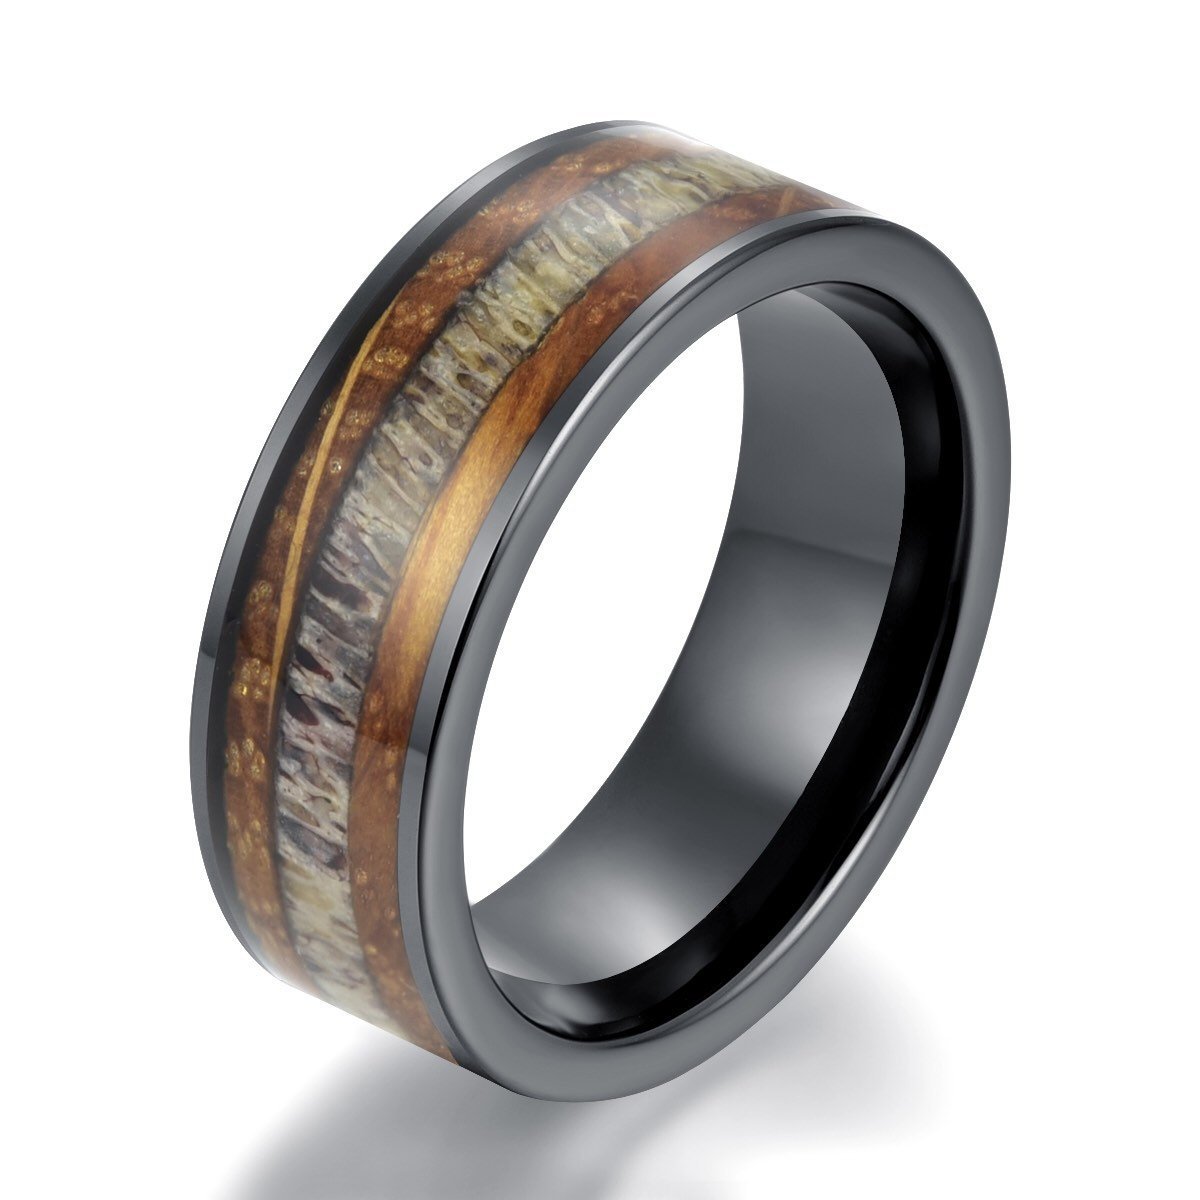 Whiskey Barrel Wood Antler Black Ceramic Ring Men's Wedding Band 8MM - PRISTINE RINGS